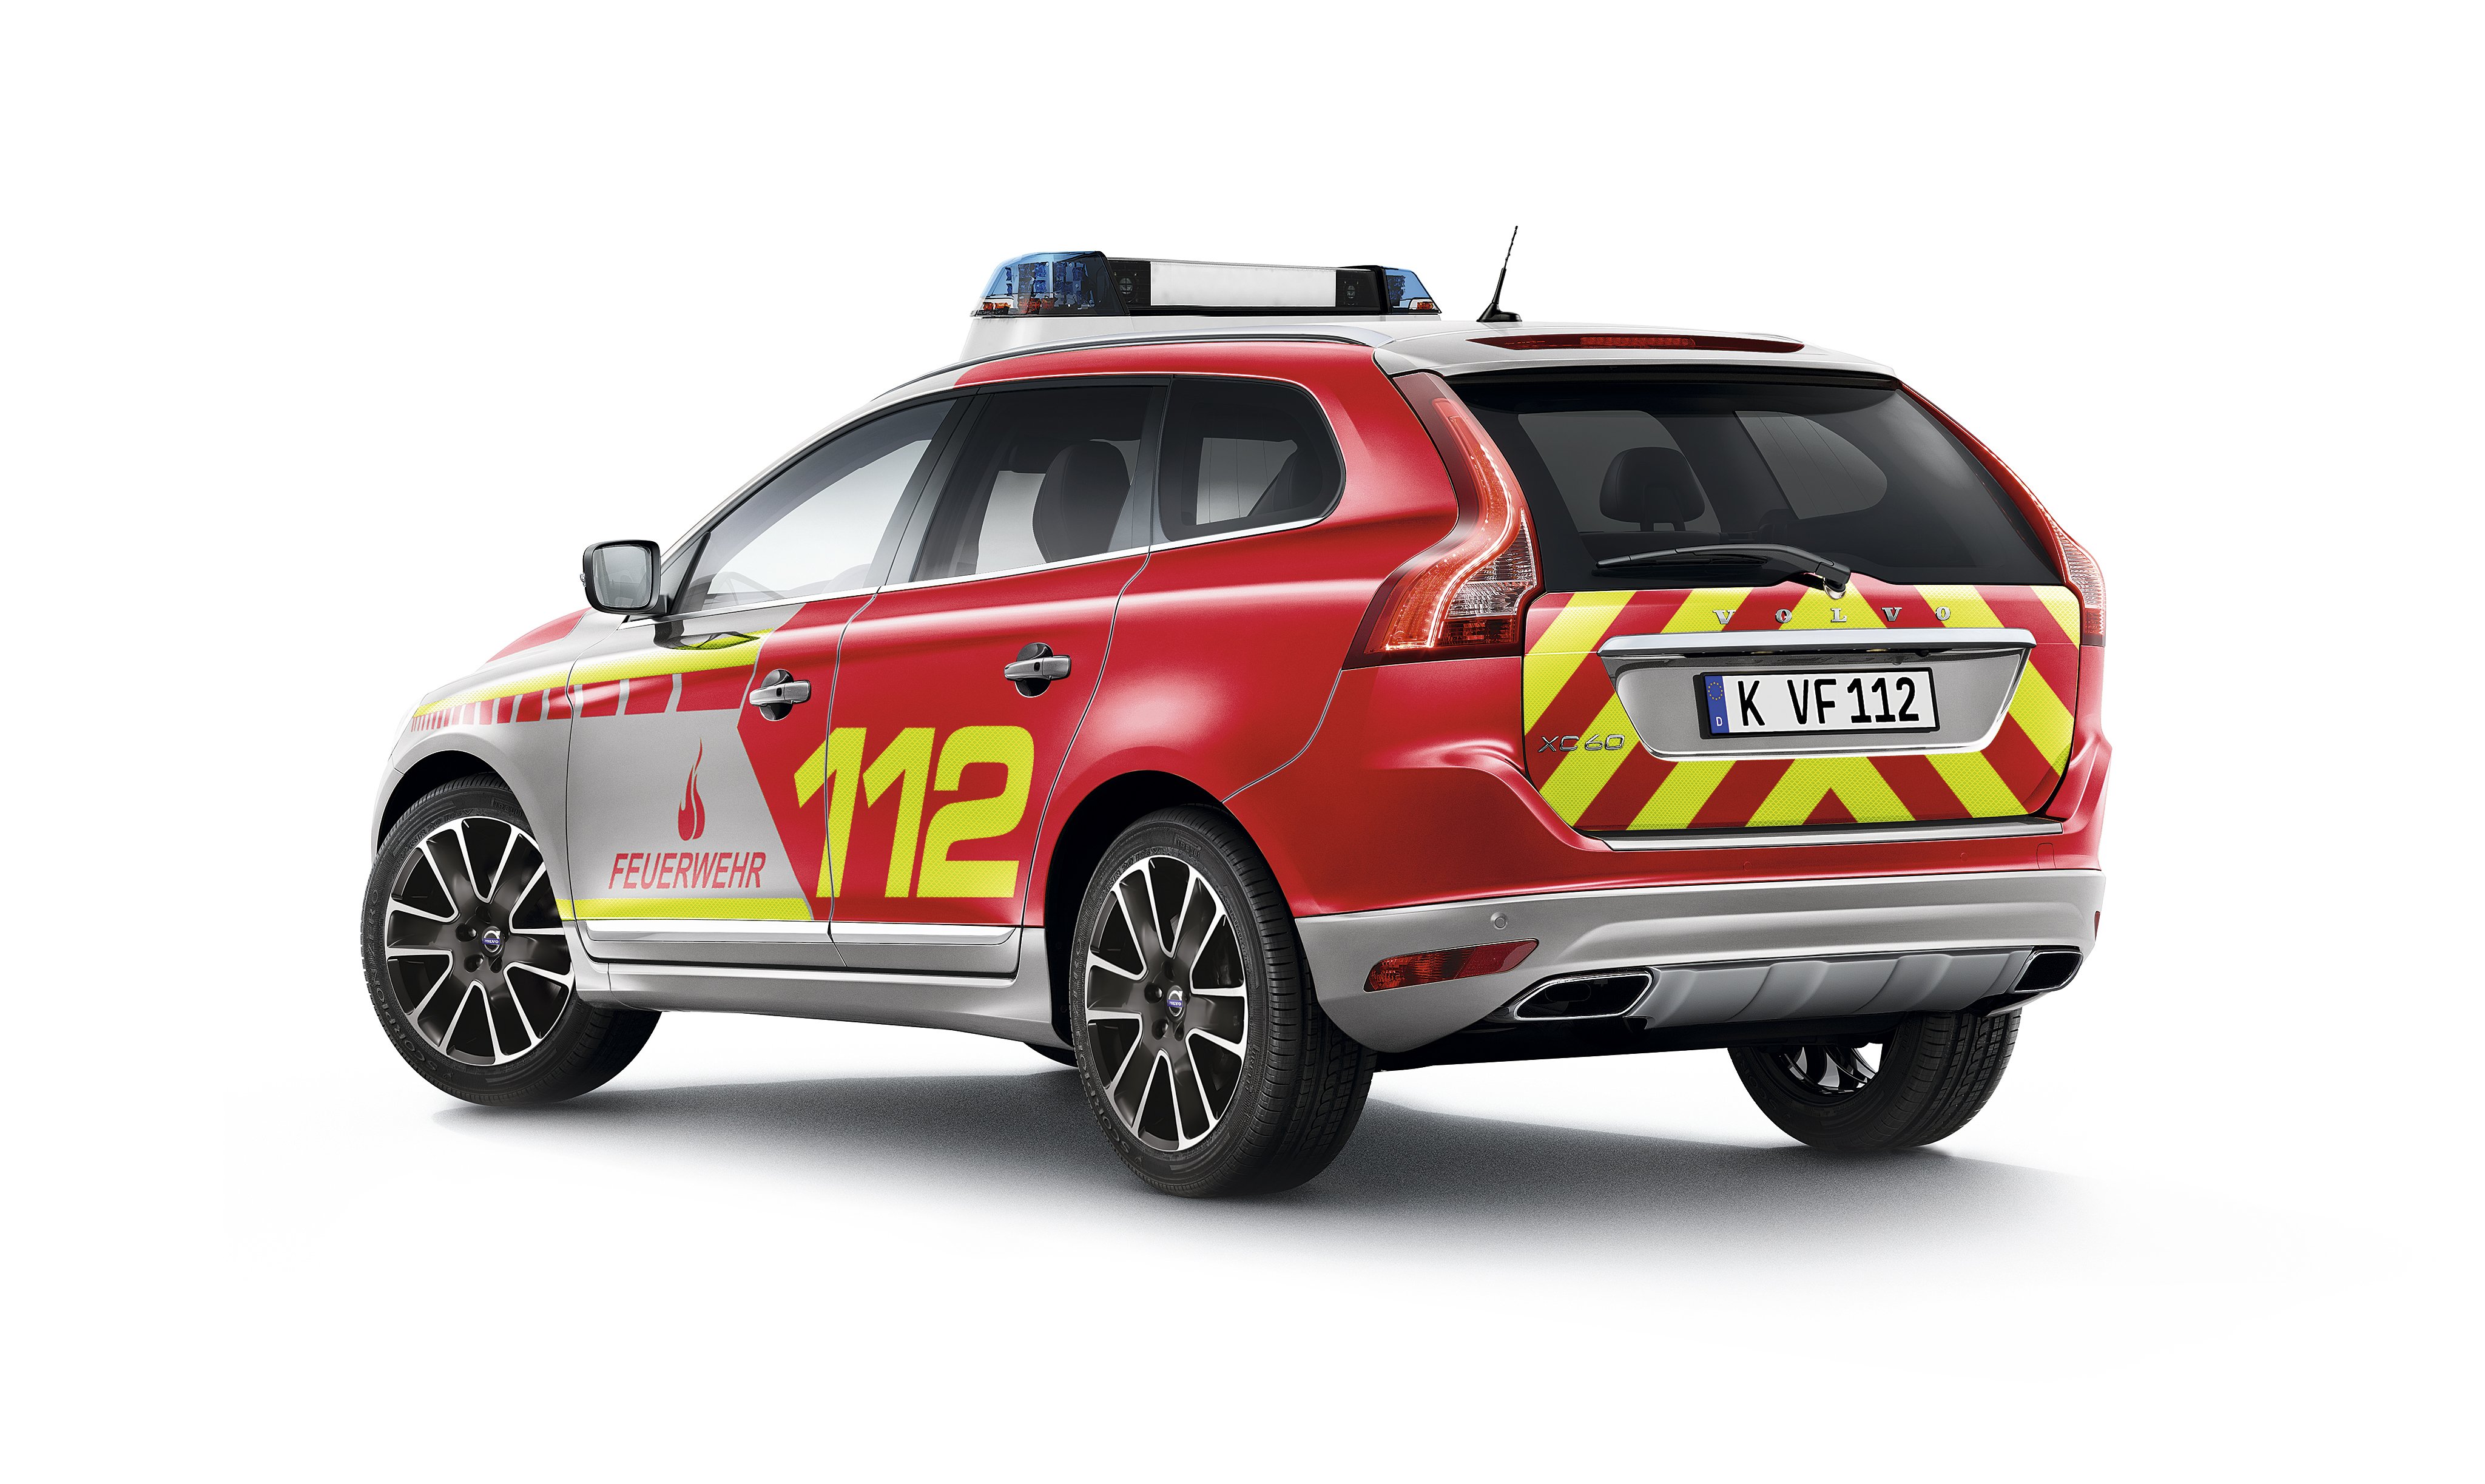 2015, Volvo, Xc60, Feuerwehr, Stationwagon, Fire, Firetruck, Emergency Wallpaper